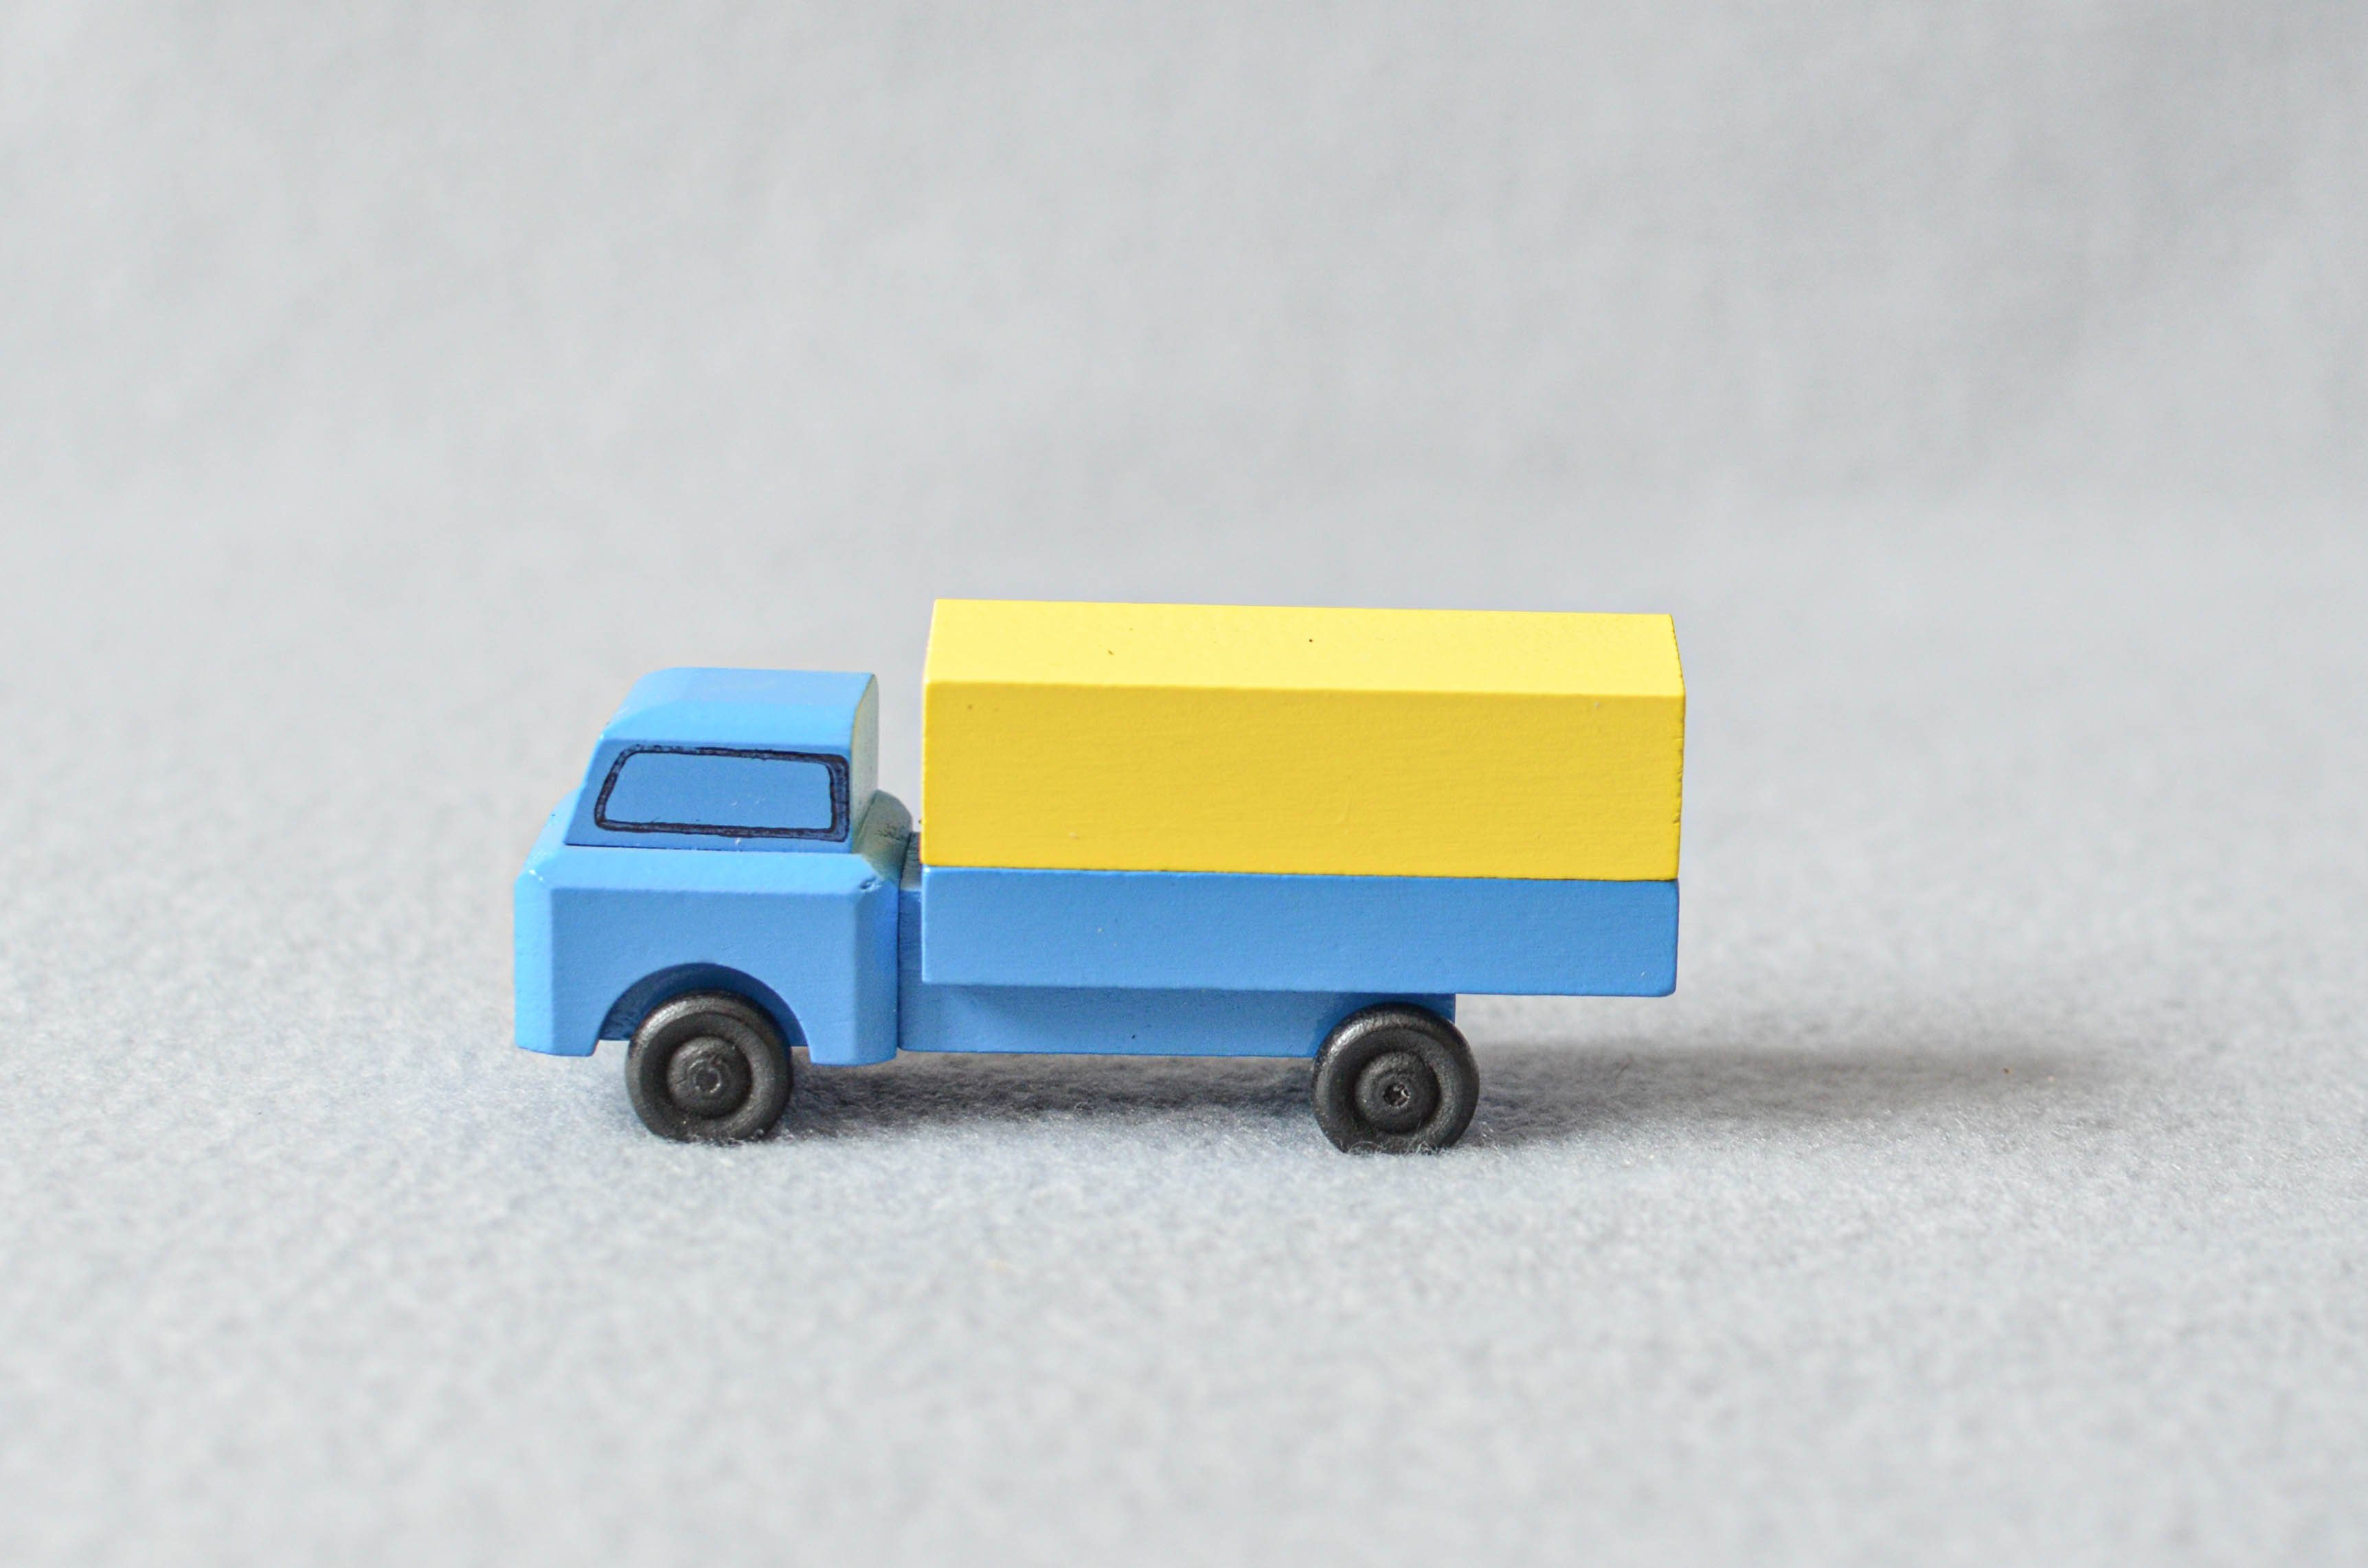 Spielzeug-Auto Holzspielzeug Lastenauto mit Plane HxBxT 3,5x7,5x3cm NEU, Mit Planenaufbau